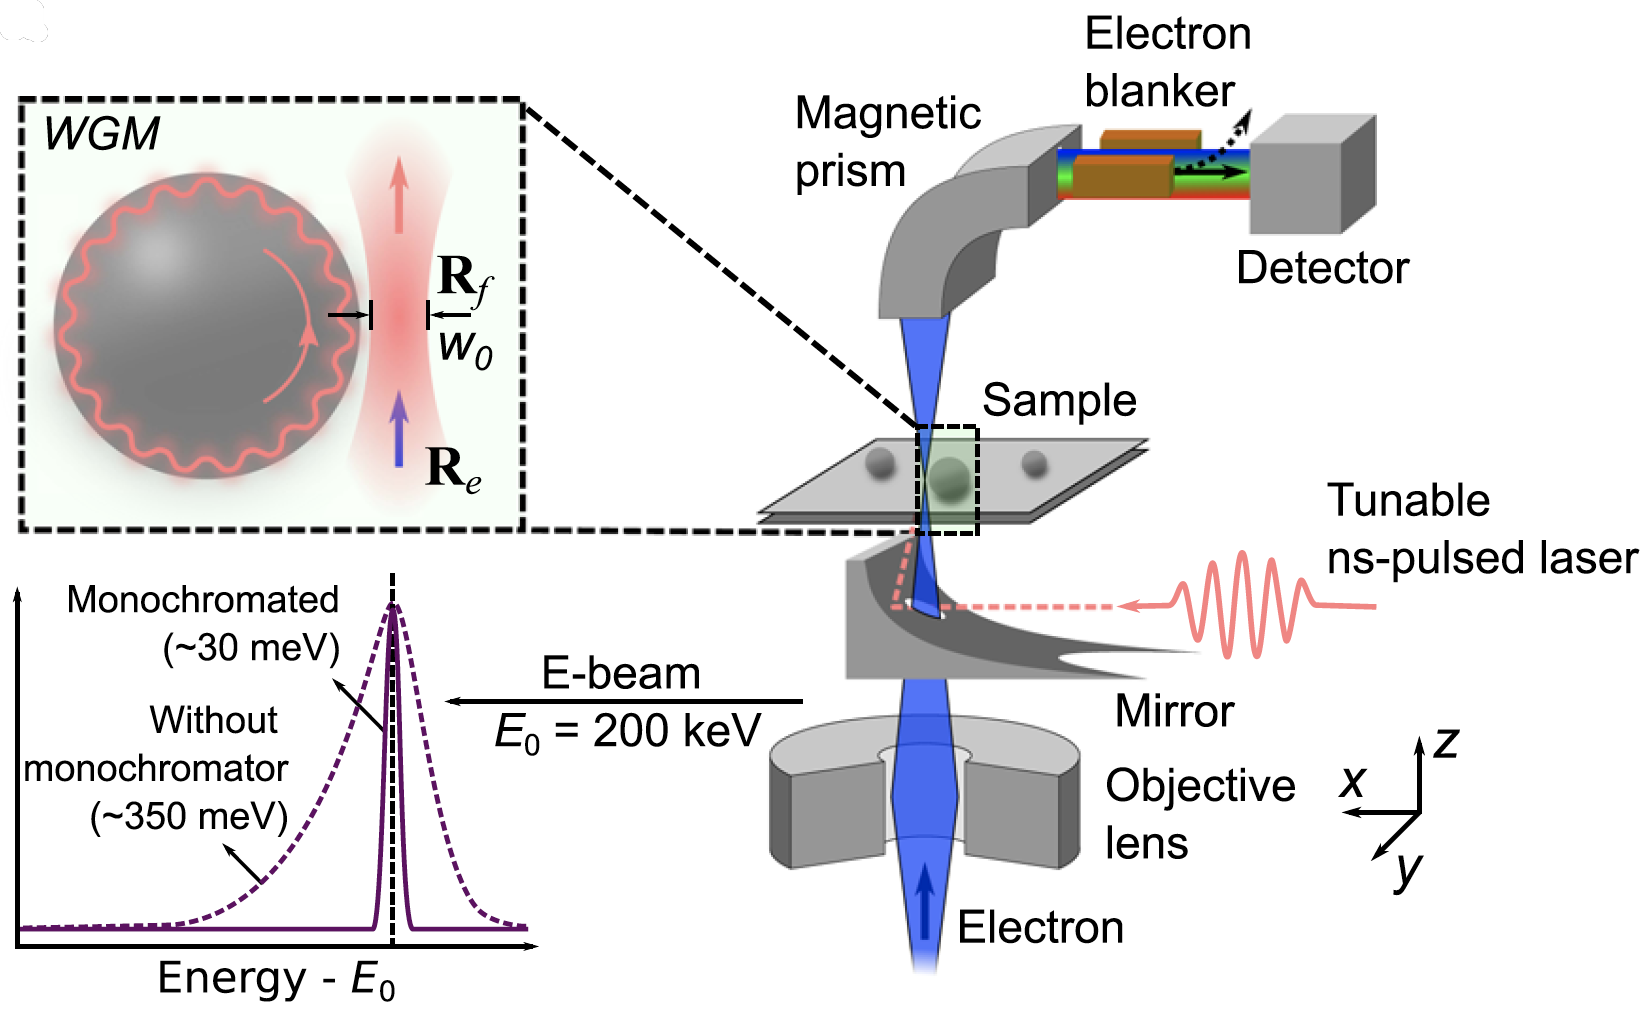 μeV electron spectromicroscopy using free-space light